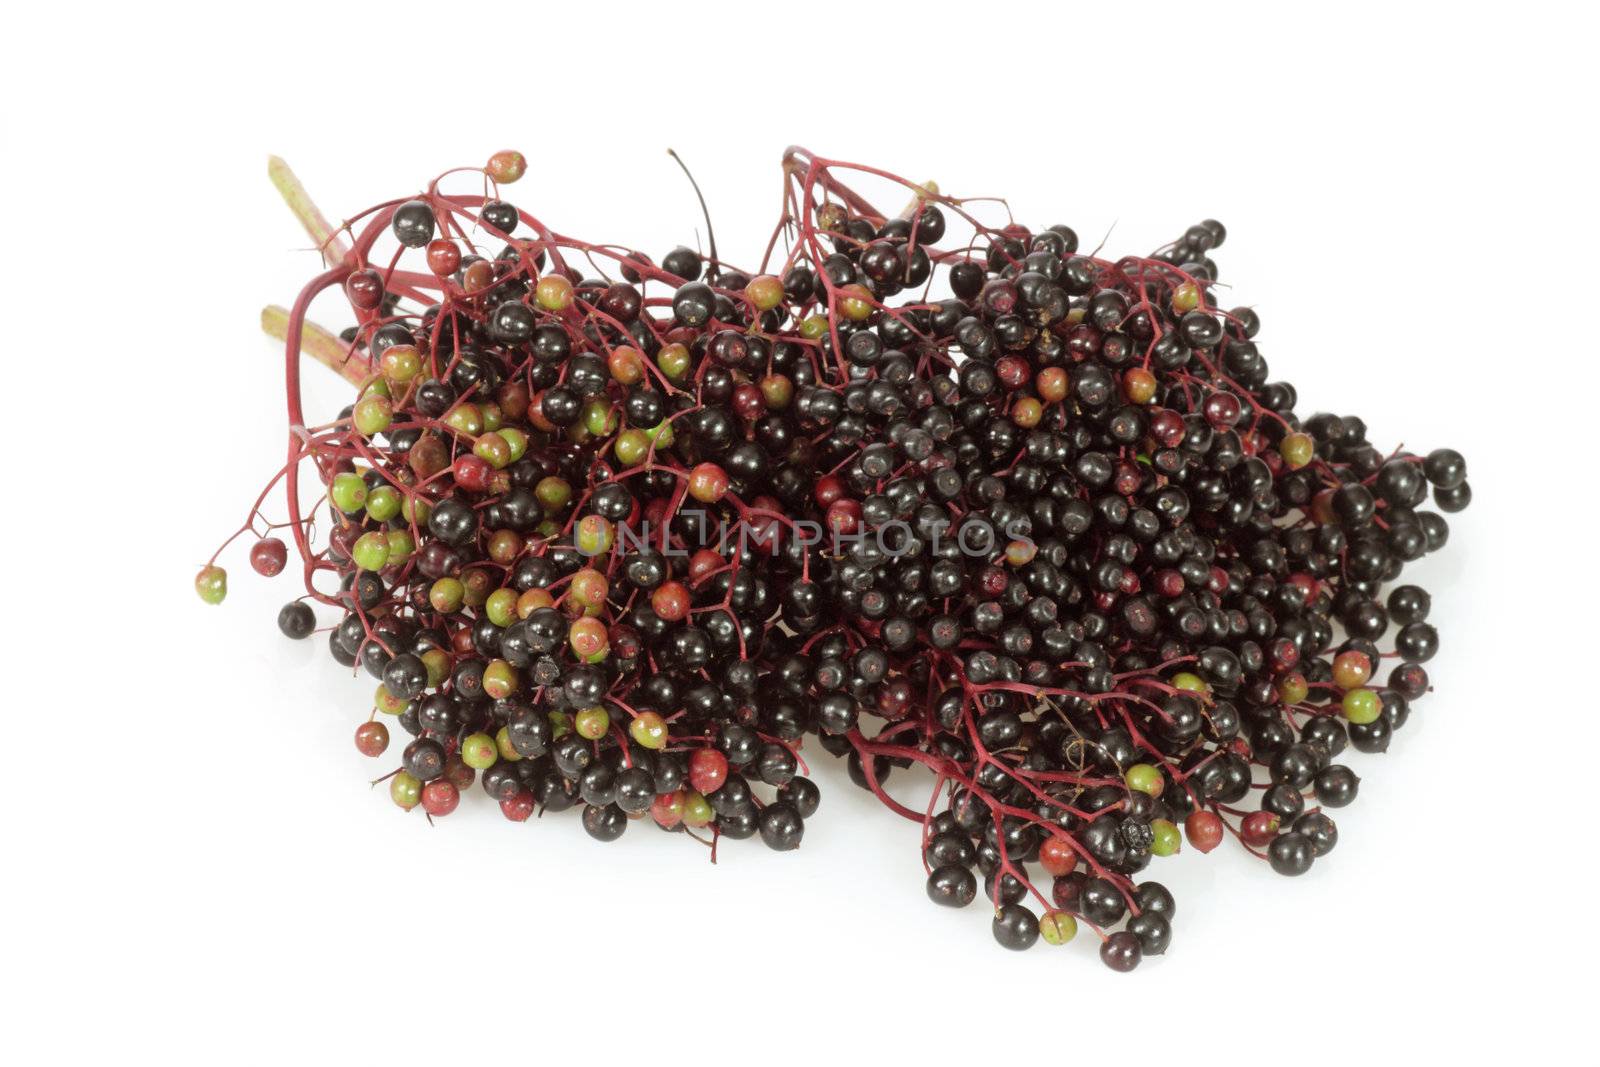 Elderberries by Colour